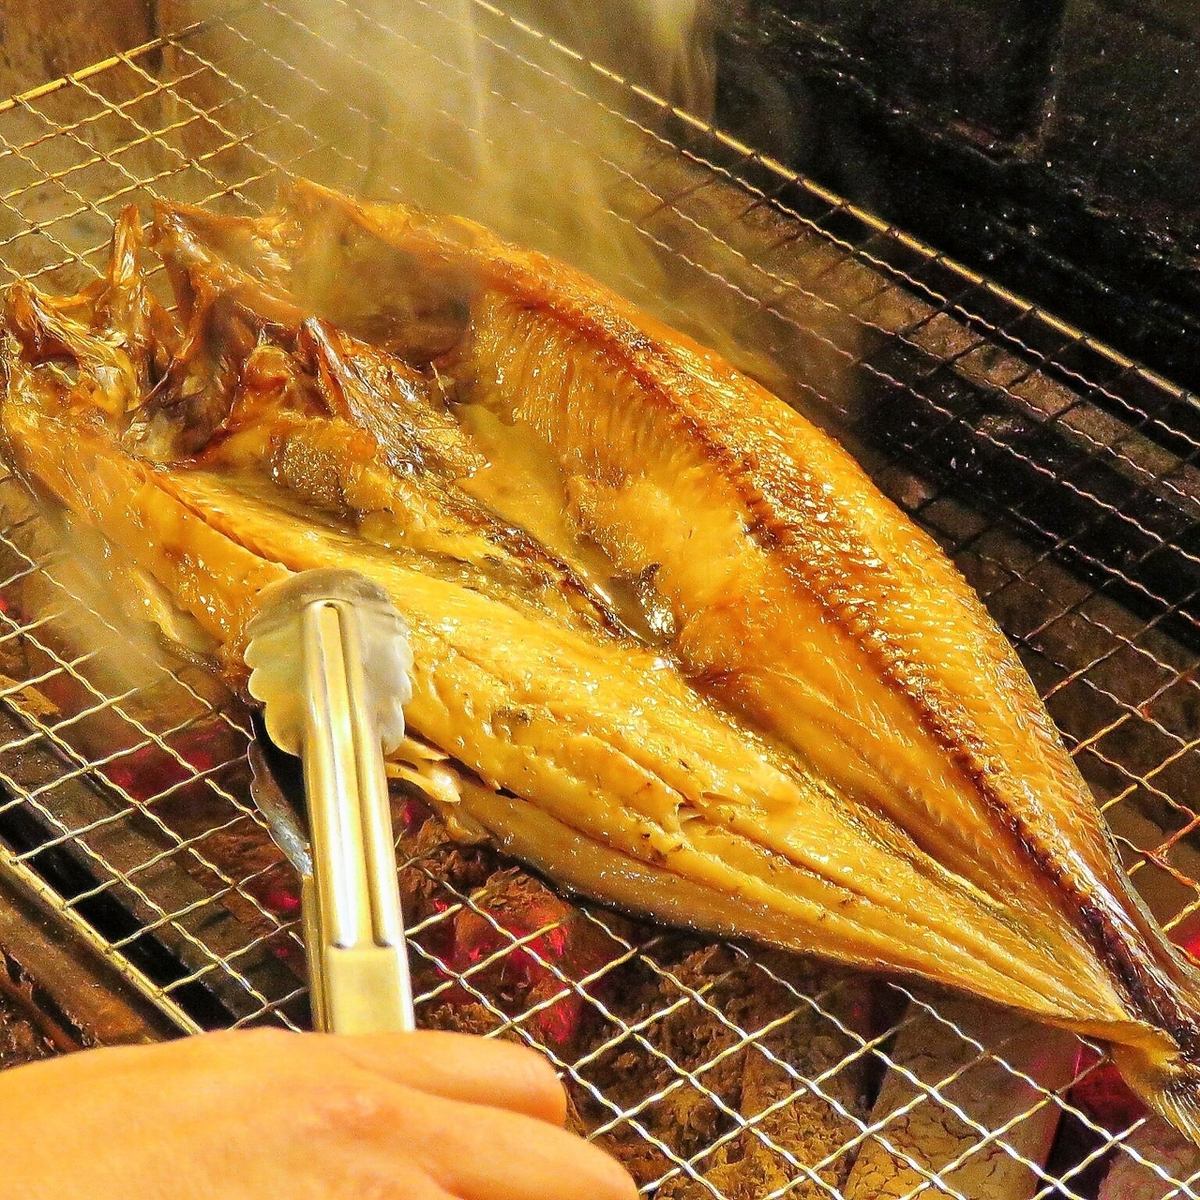 홋카이도의 맛있는 해물 요리와 전국에서 엄선한 토속주로 기다리고 있습니다!